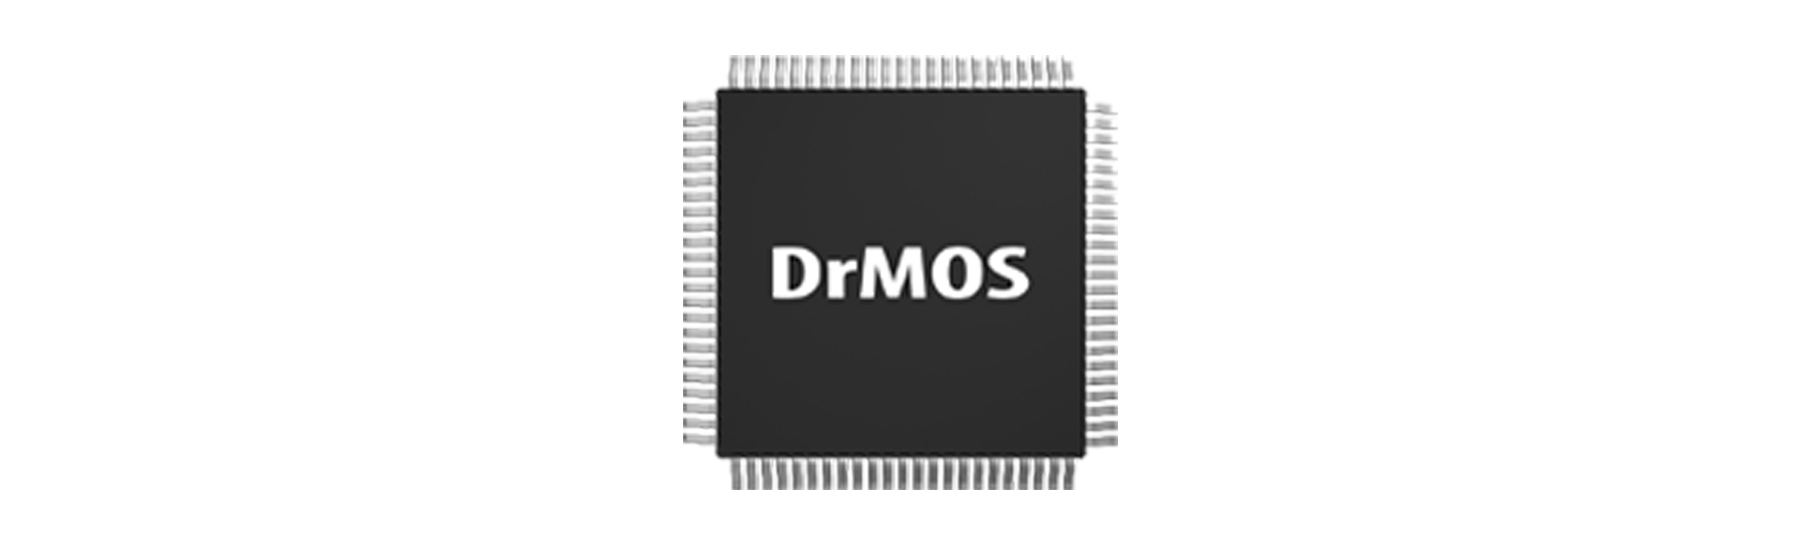 پردازنده قدرتمند کارت گرافیک Palit با پشتیبانی از سیستم DrMOS